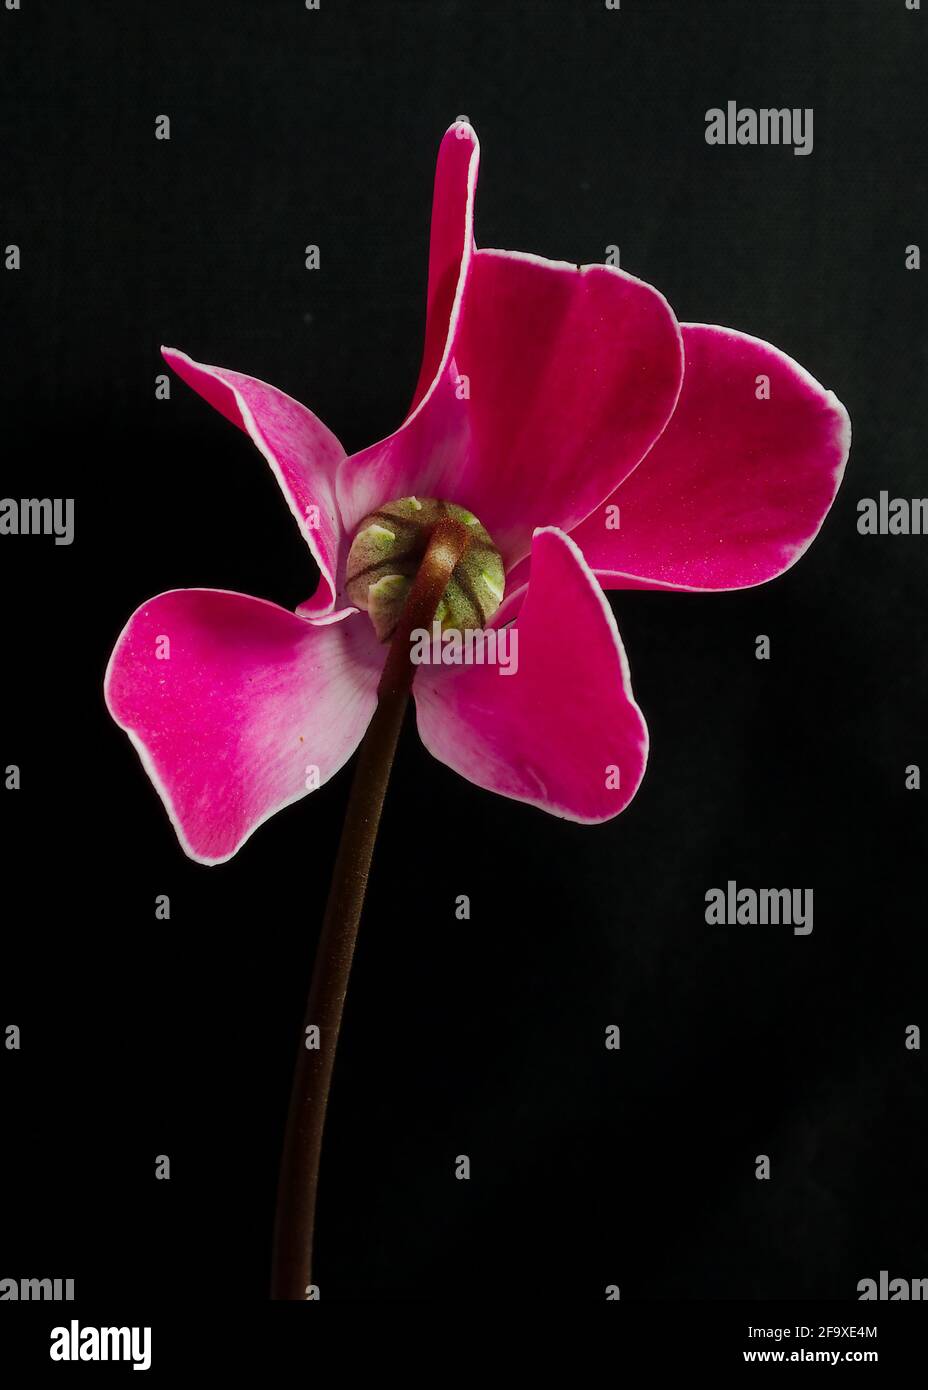 Eine Blumenstudie aus der Nähe eines einzelnen Blütenstiels aus Cyclamen, der sich auf einem schwarzen Hintergrund mit leuchtend rosa, weiß getrimmten zarten Blütenblättern absetzt Stockfoto